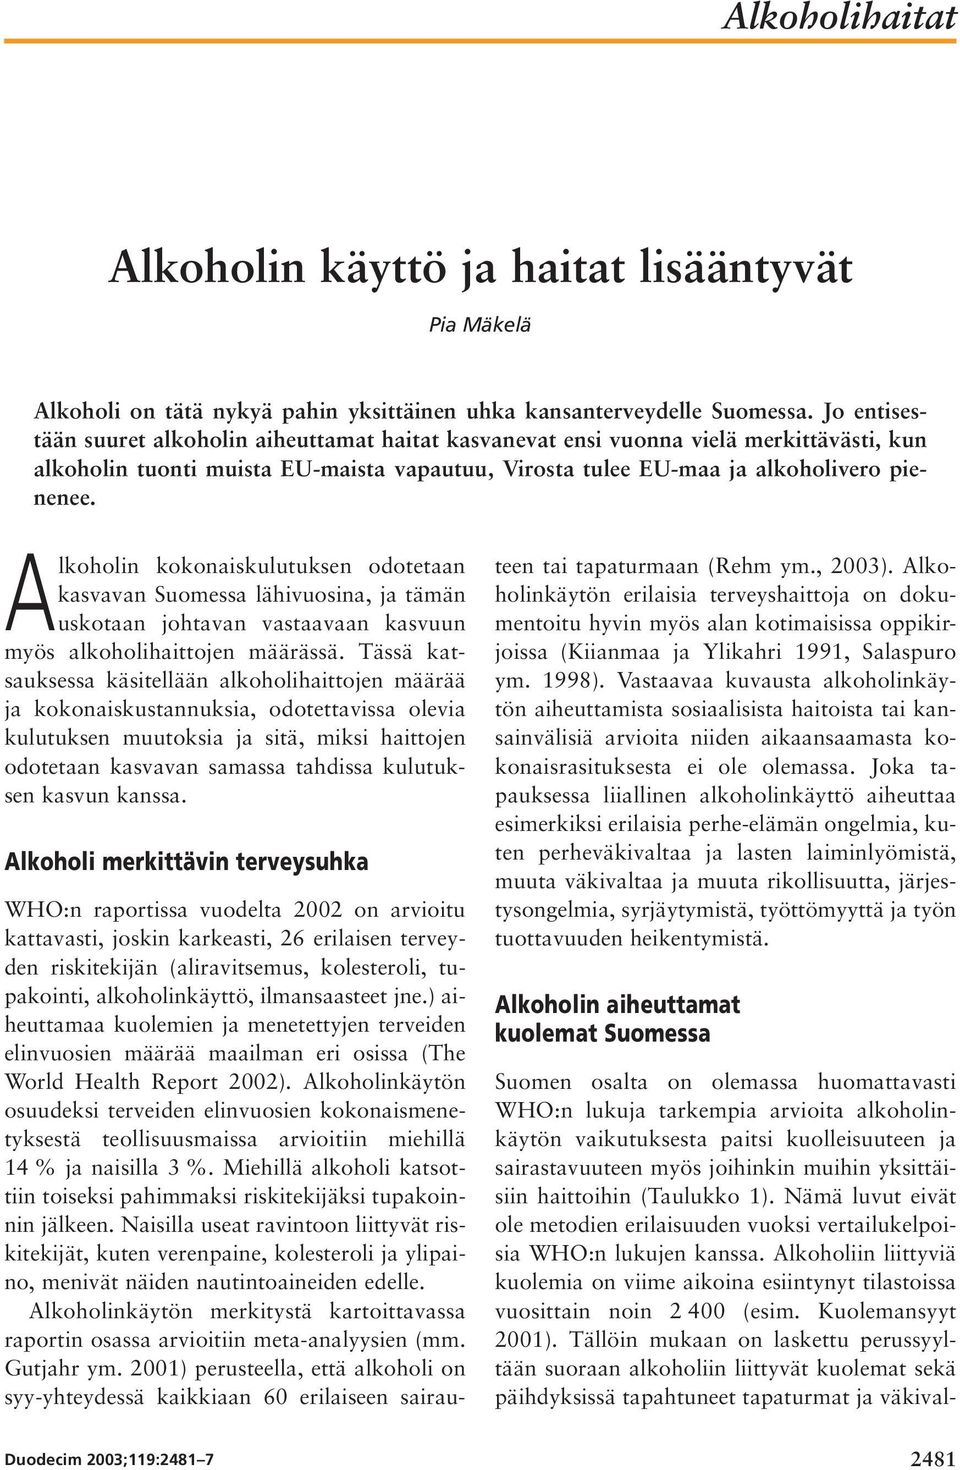 Alkoholin kokonaiskulutuksen odotetaan kasvavan Suomessa lähivuosina, ja tämän uskotaan johtavan vastaavaan kasvuun myös alkoholihaittojen määrässä.